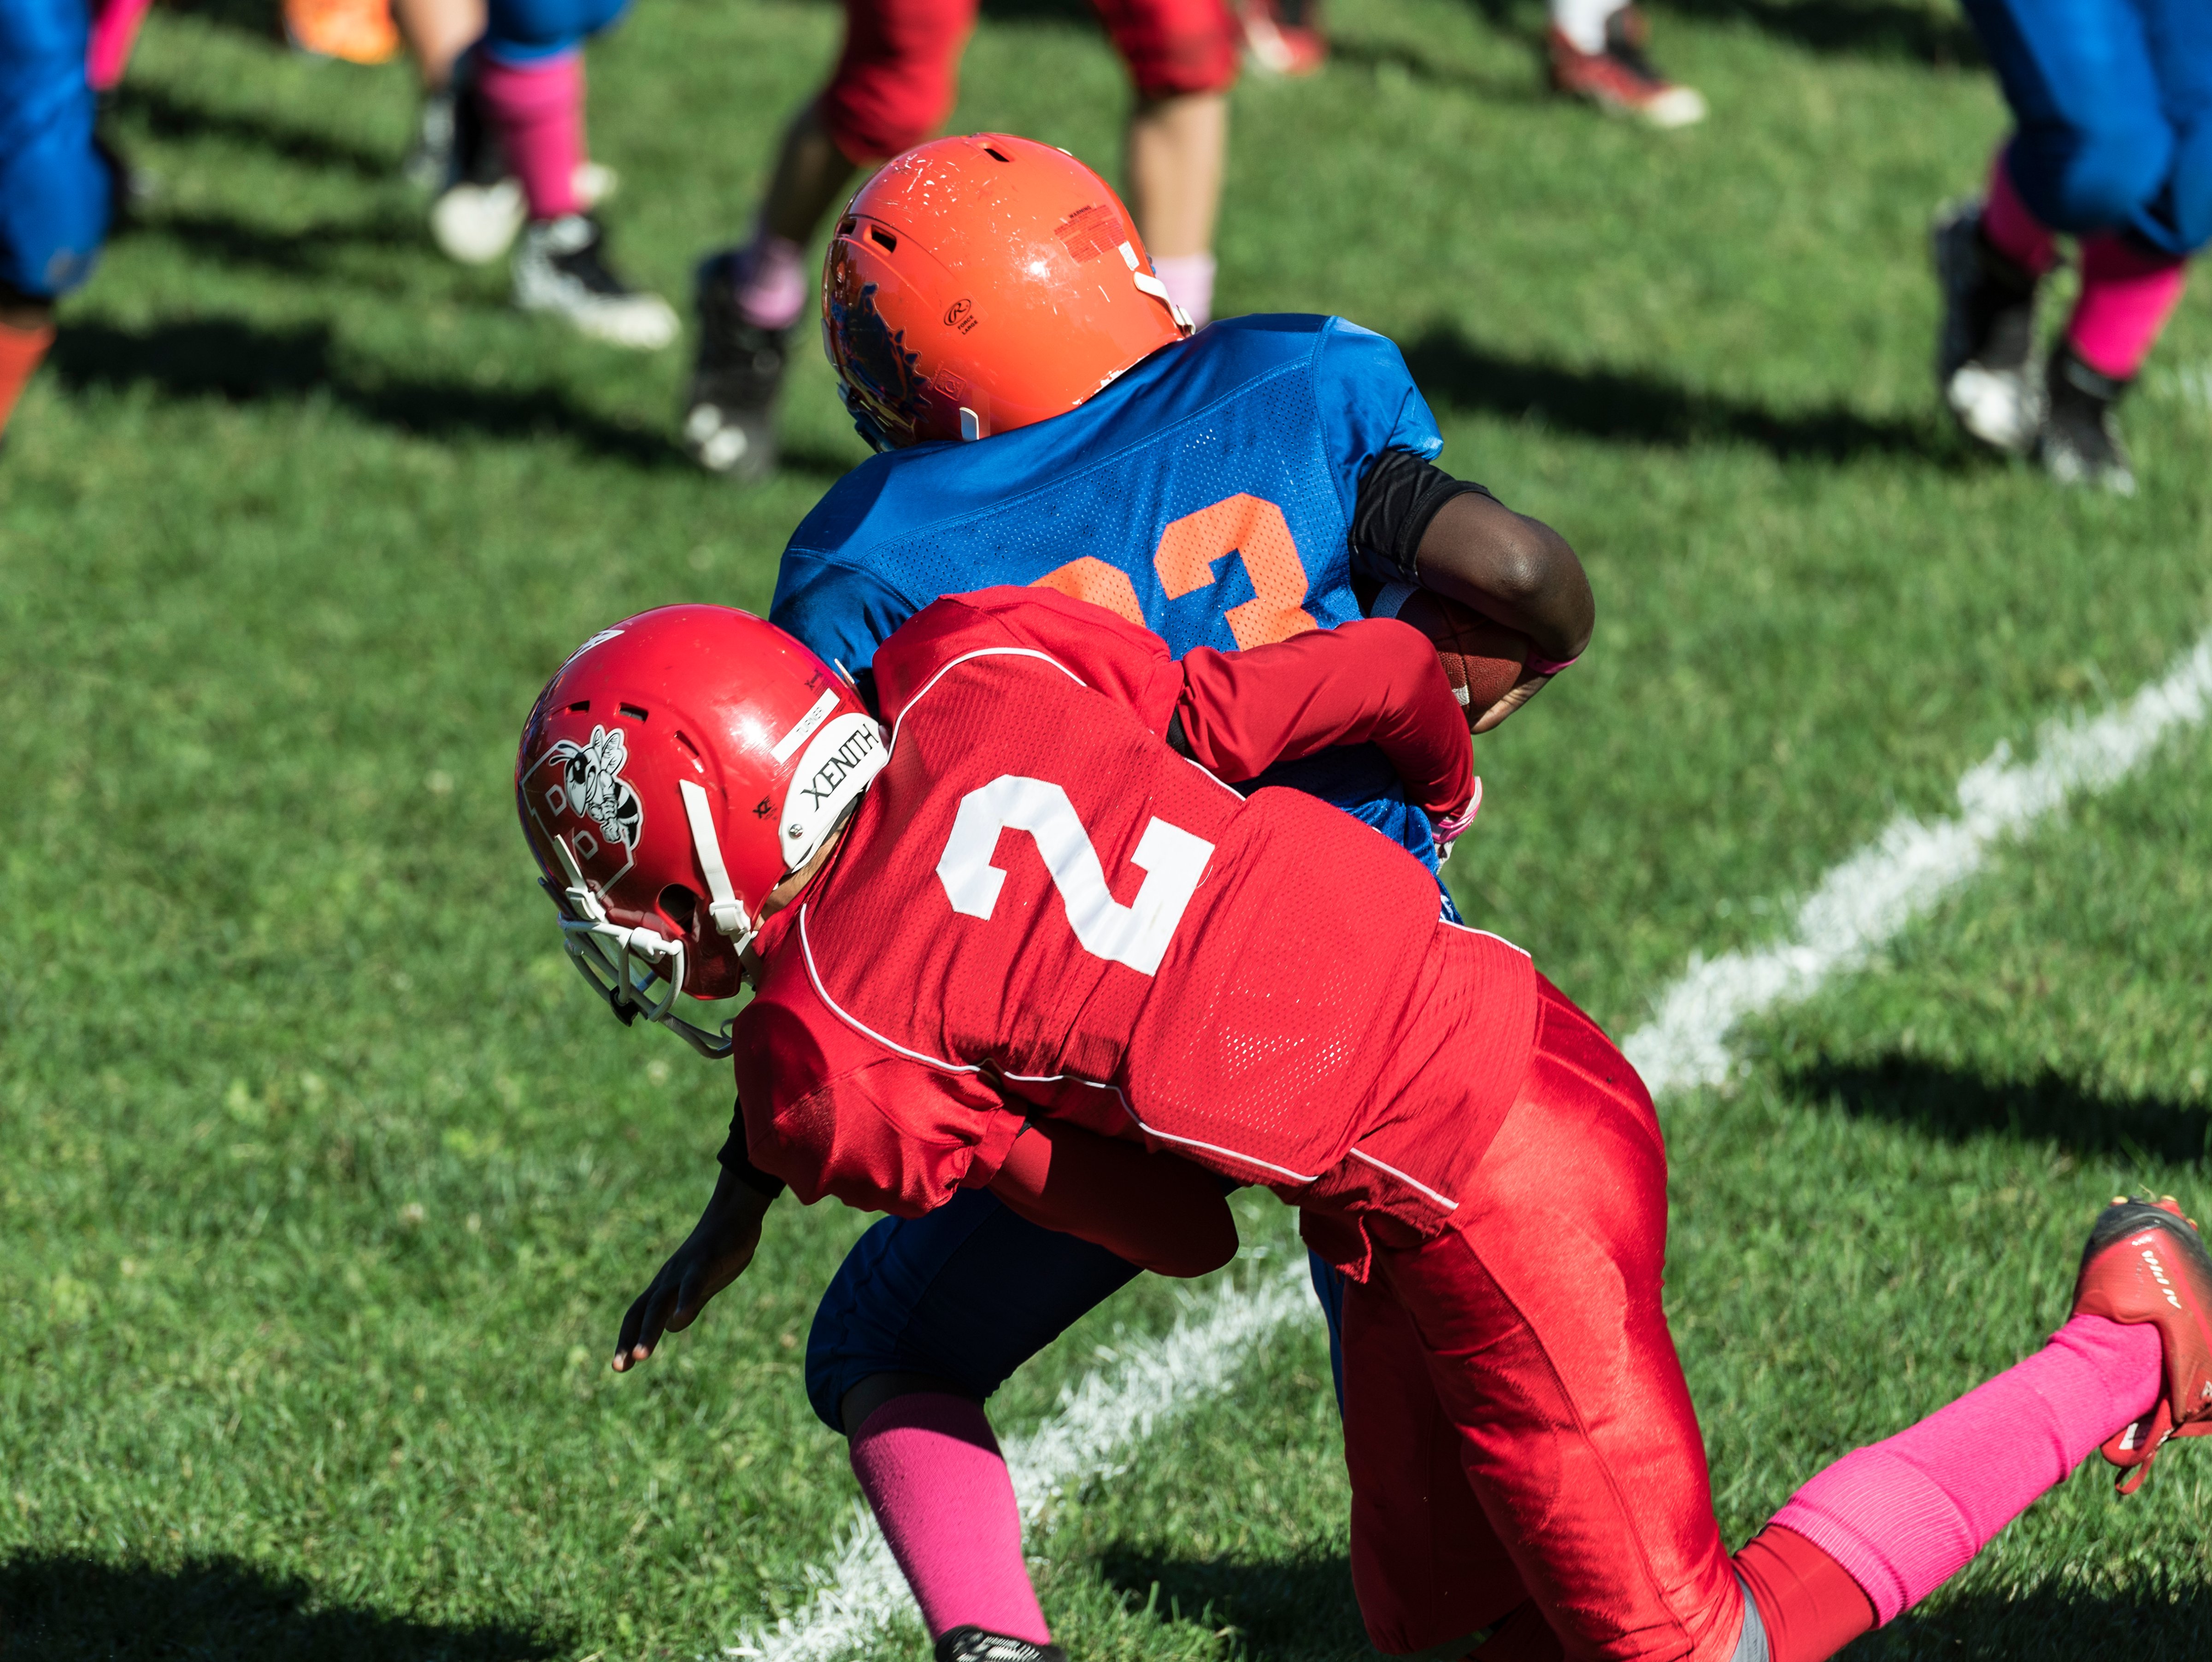 Making a tackle during a Pop Warner football game. (John Greim—LightRocket via Getty Images)